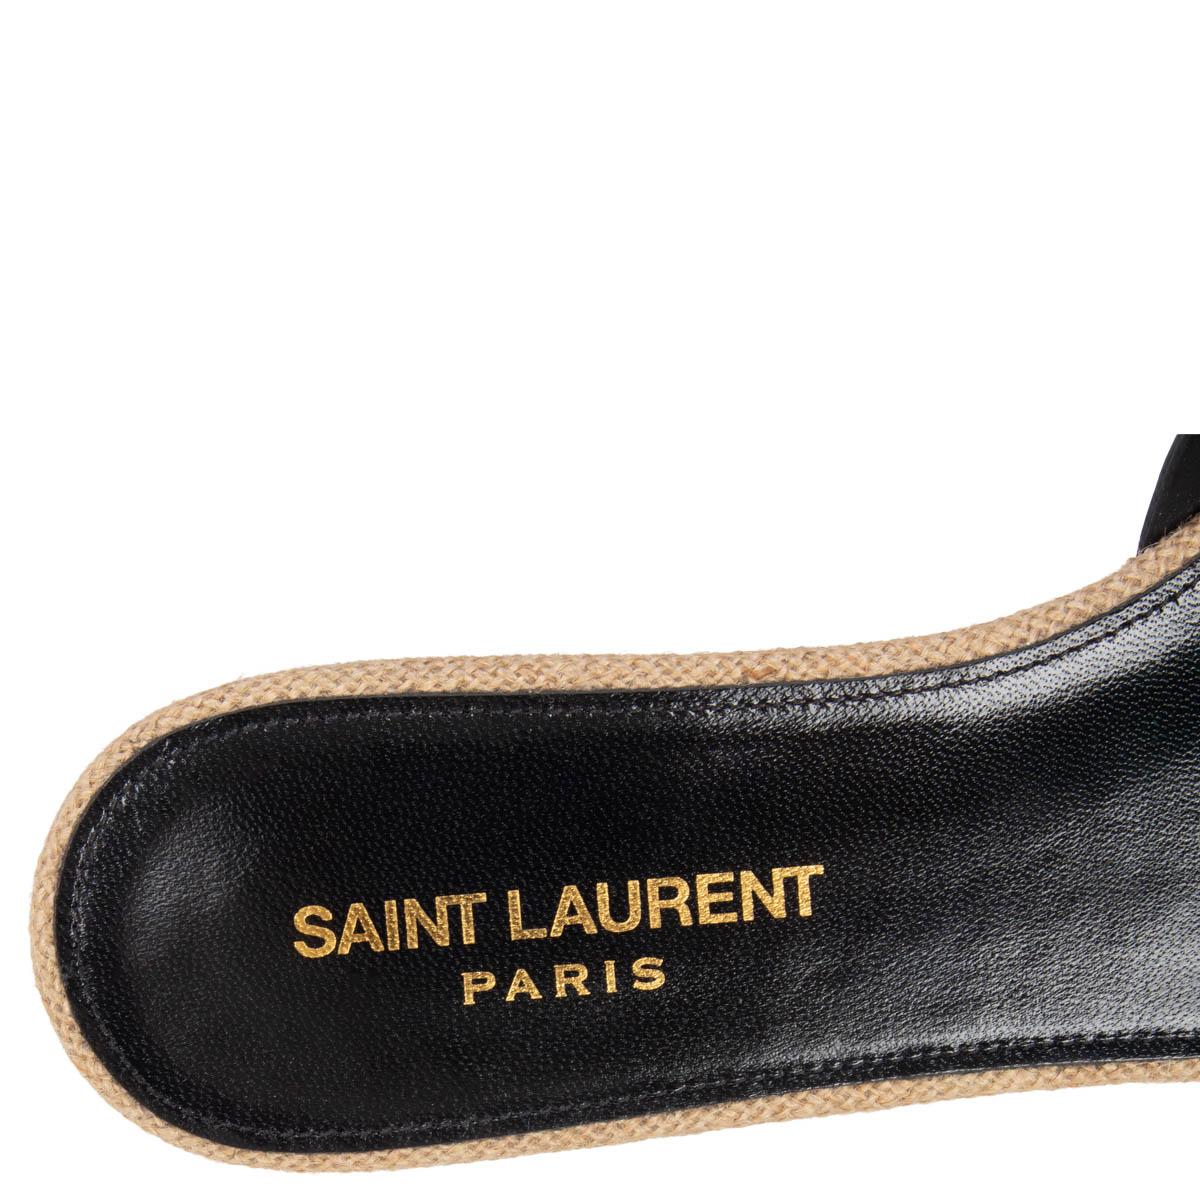 Black SAINT LAURENT black leather TRIBUTE Flat Sandals Shoes 37